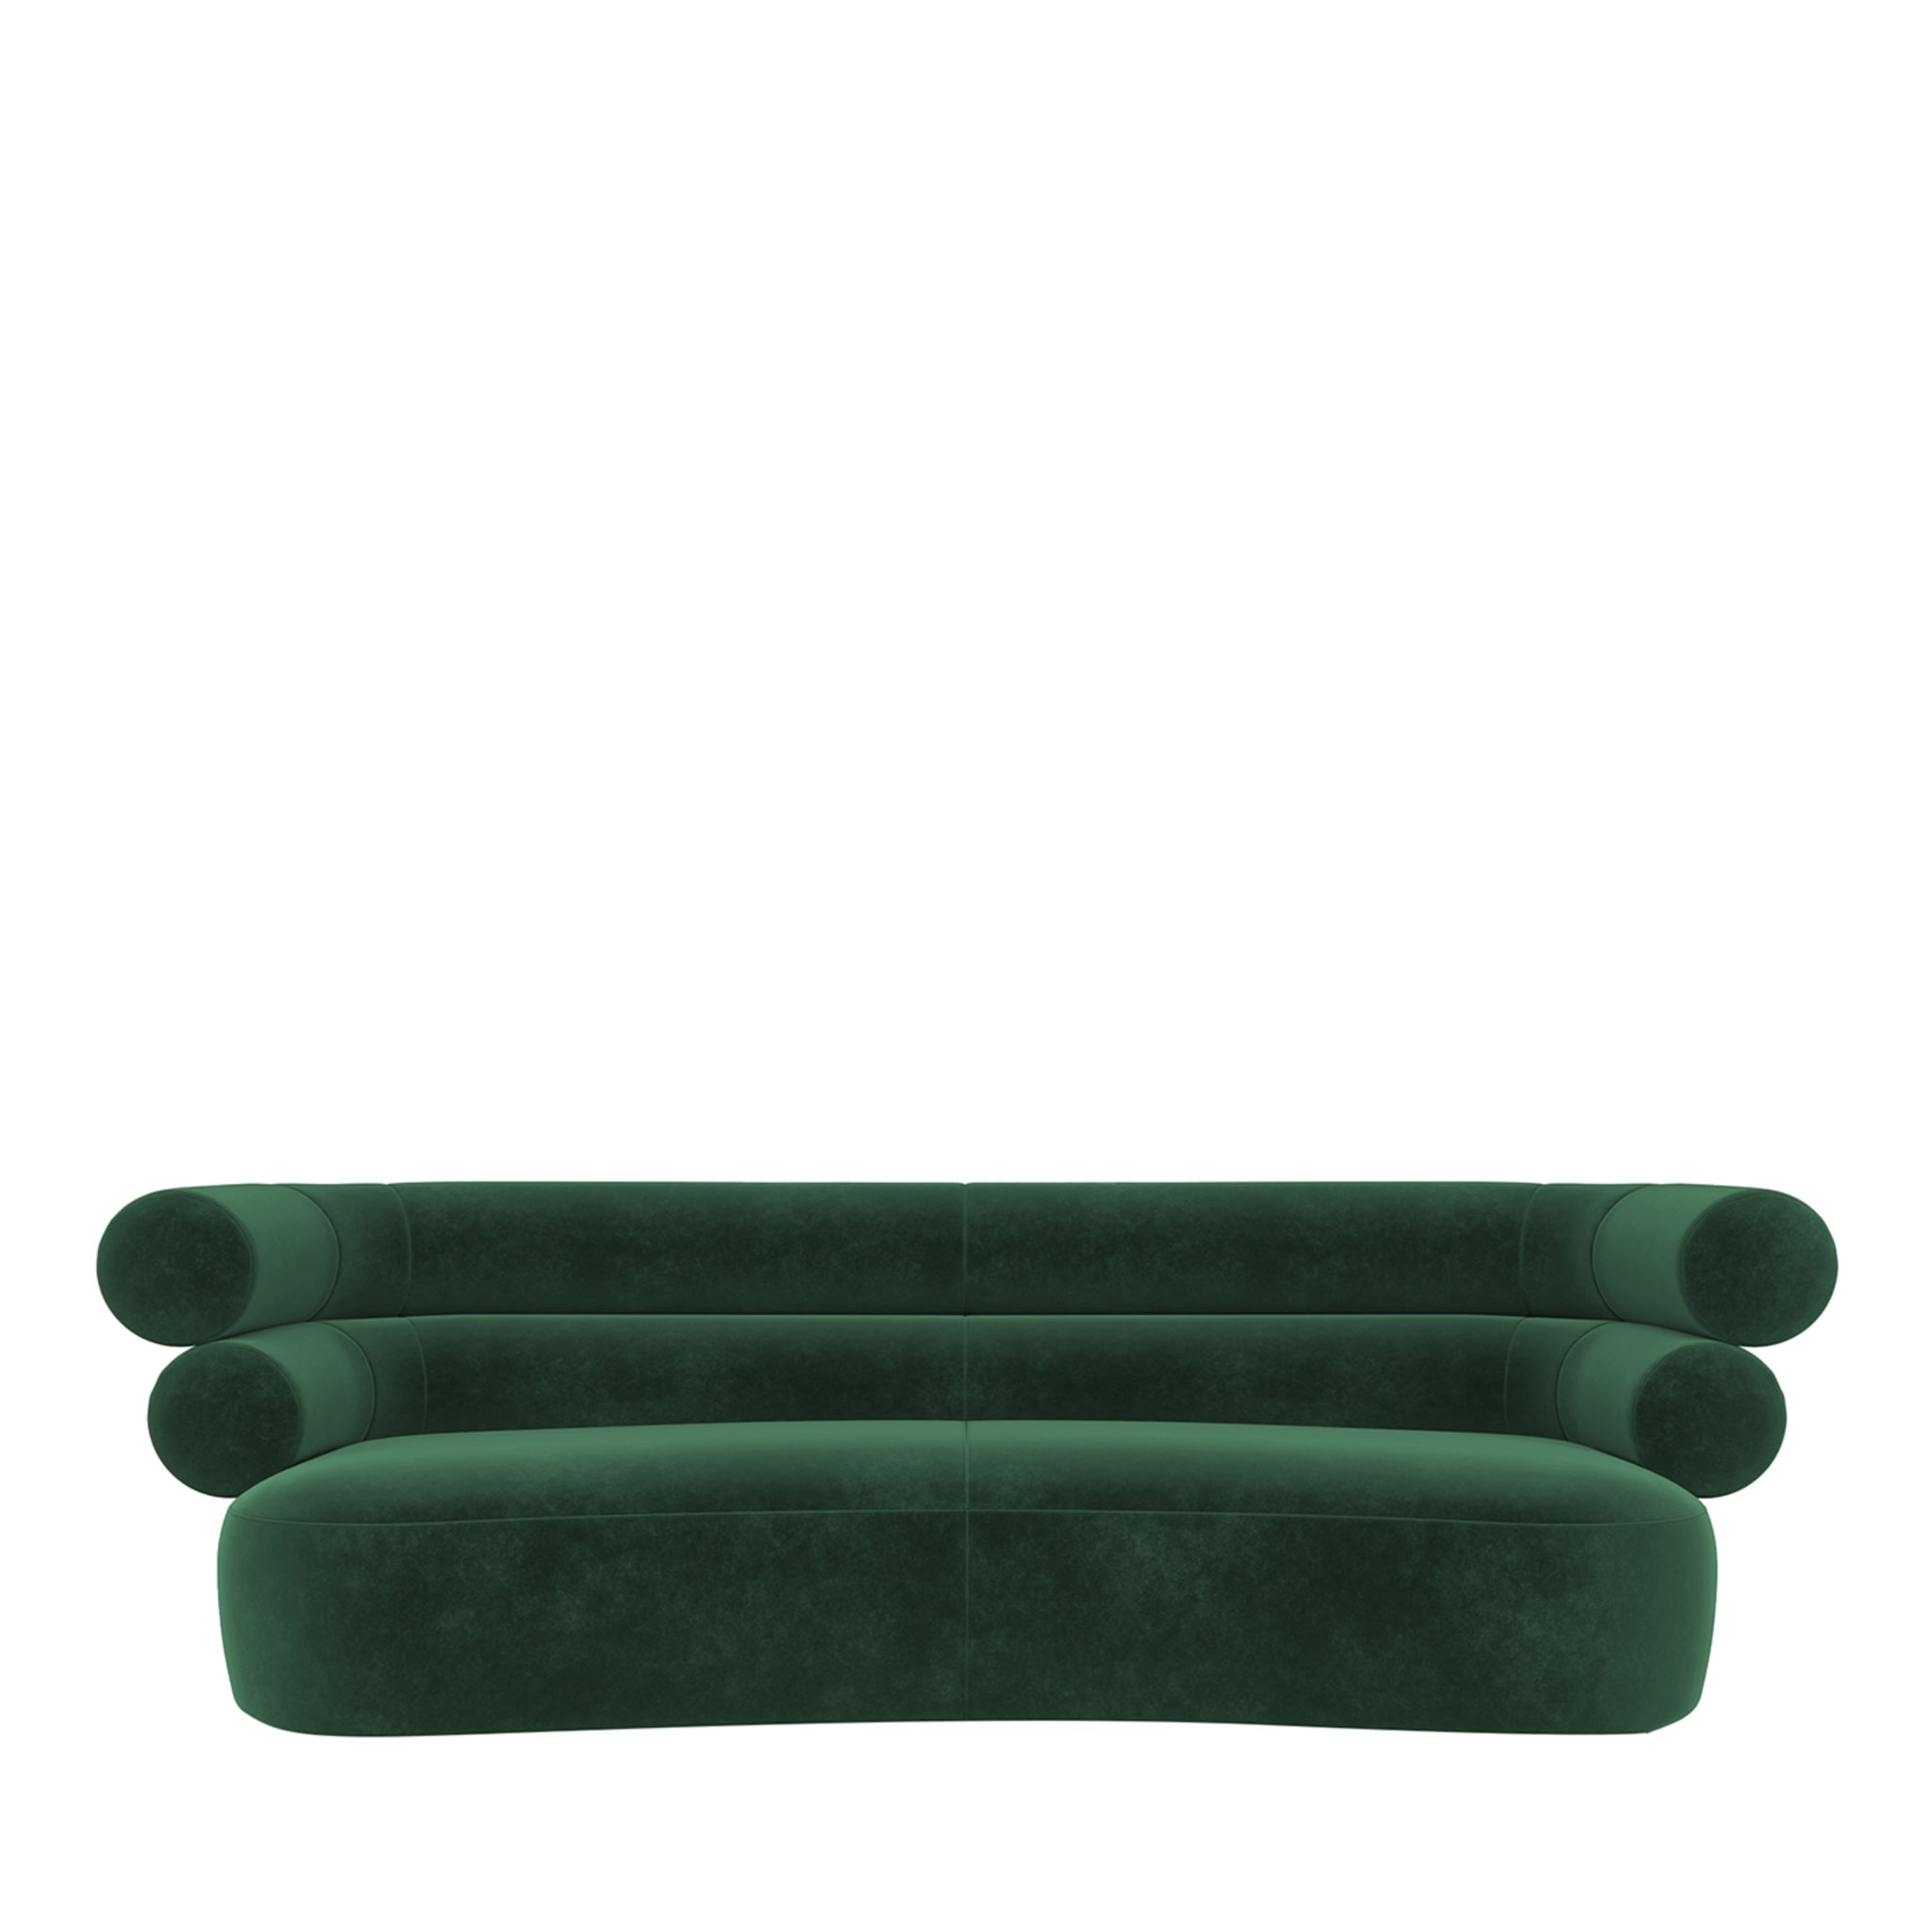 Tube Emerald-Green Velvet Sofa - Main view